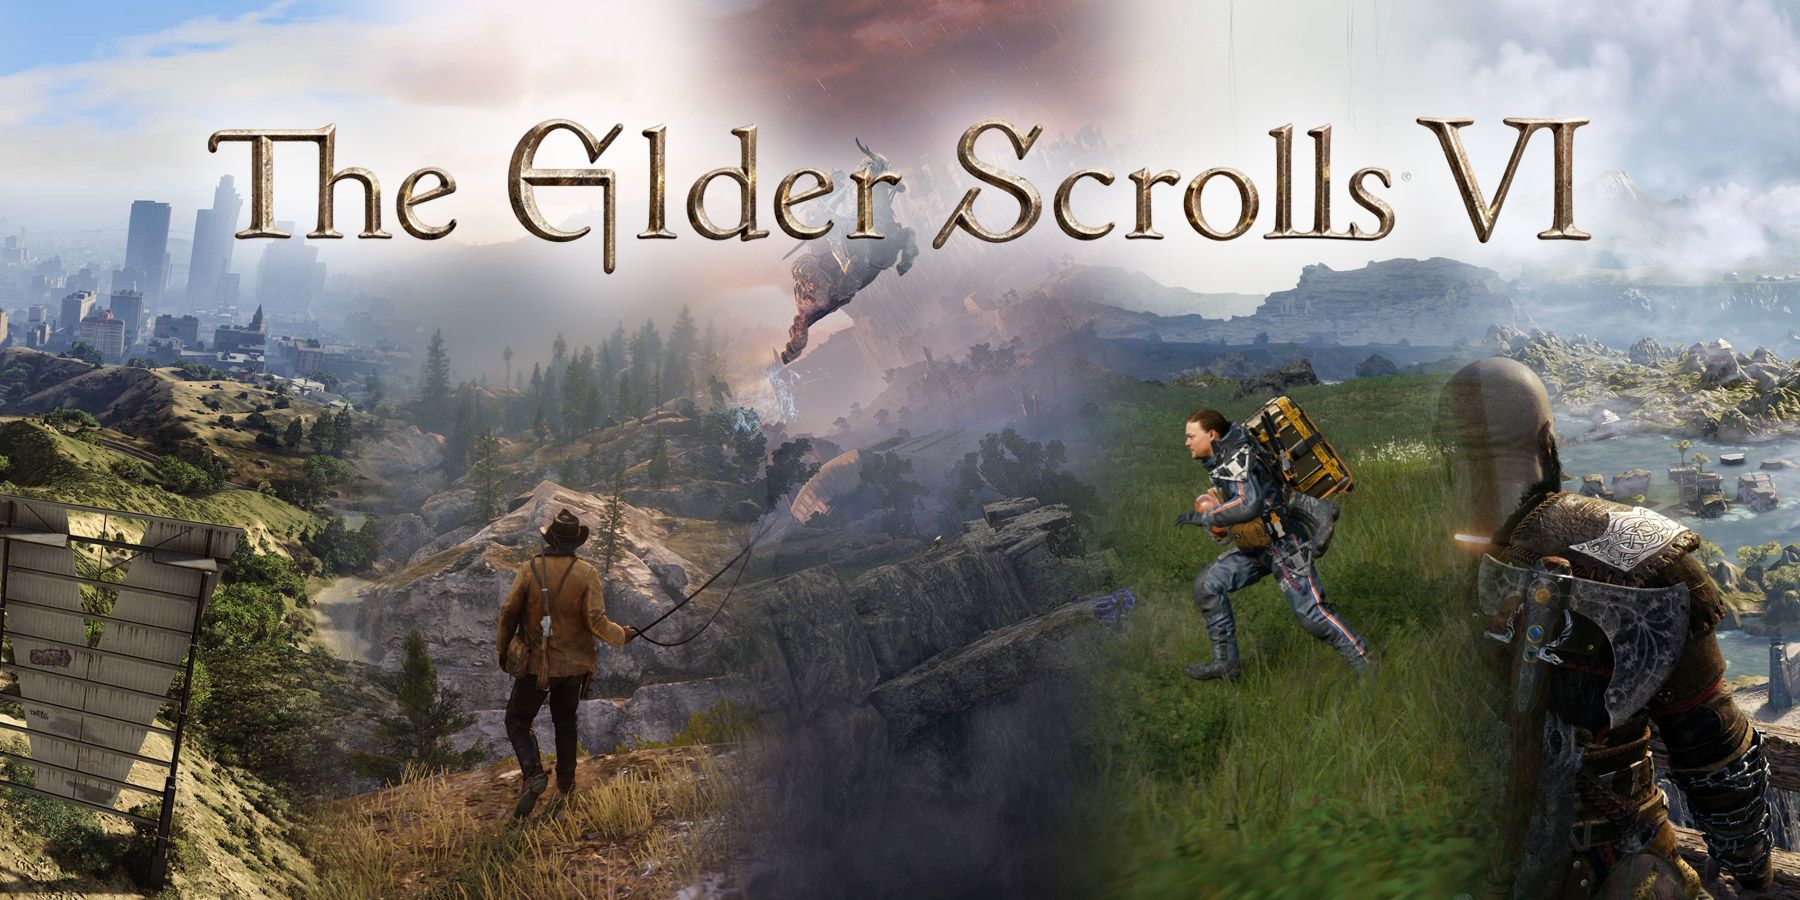 The Elder Scrolls 6 Teases Some Big Changes